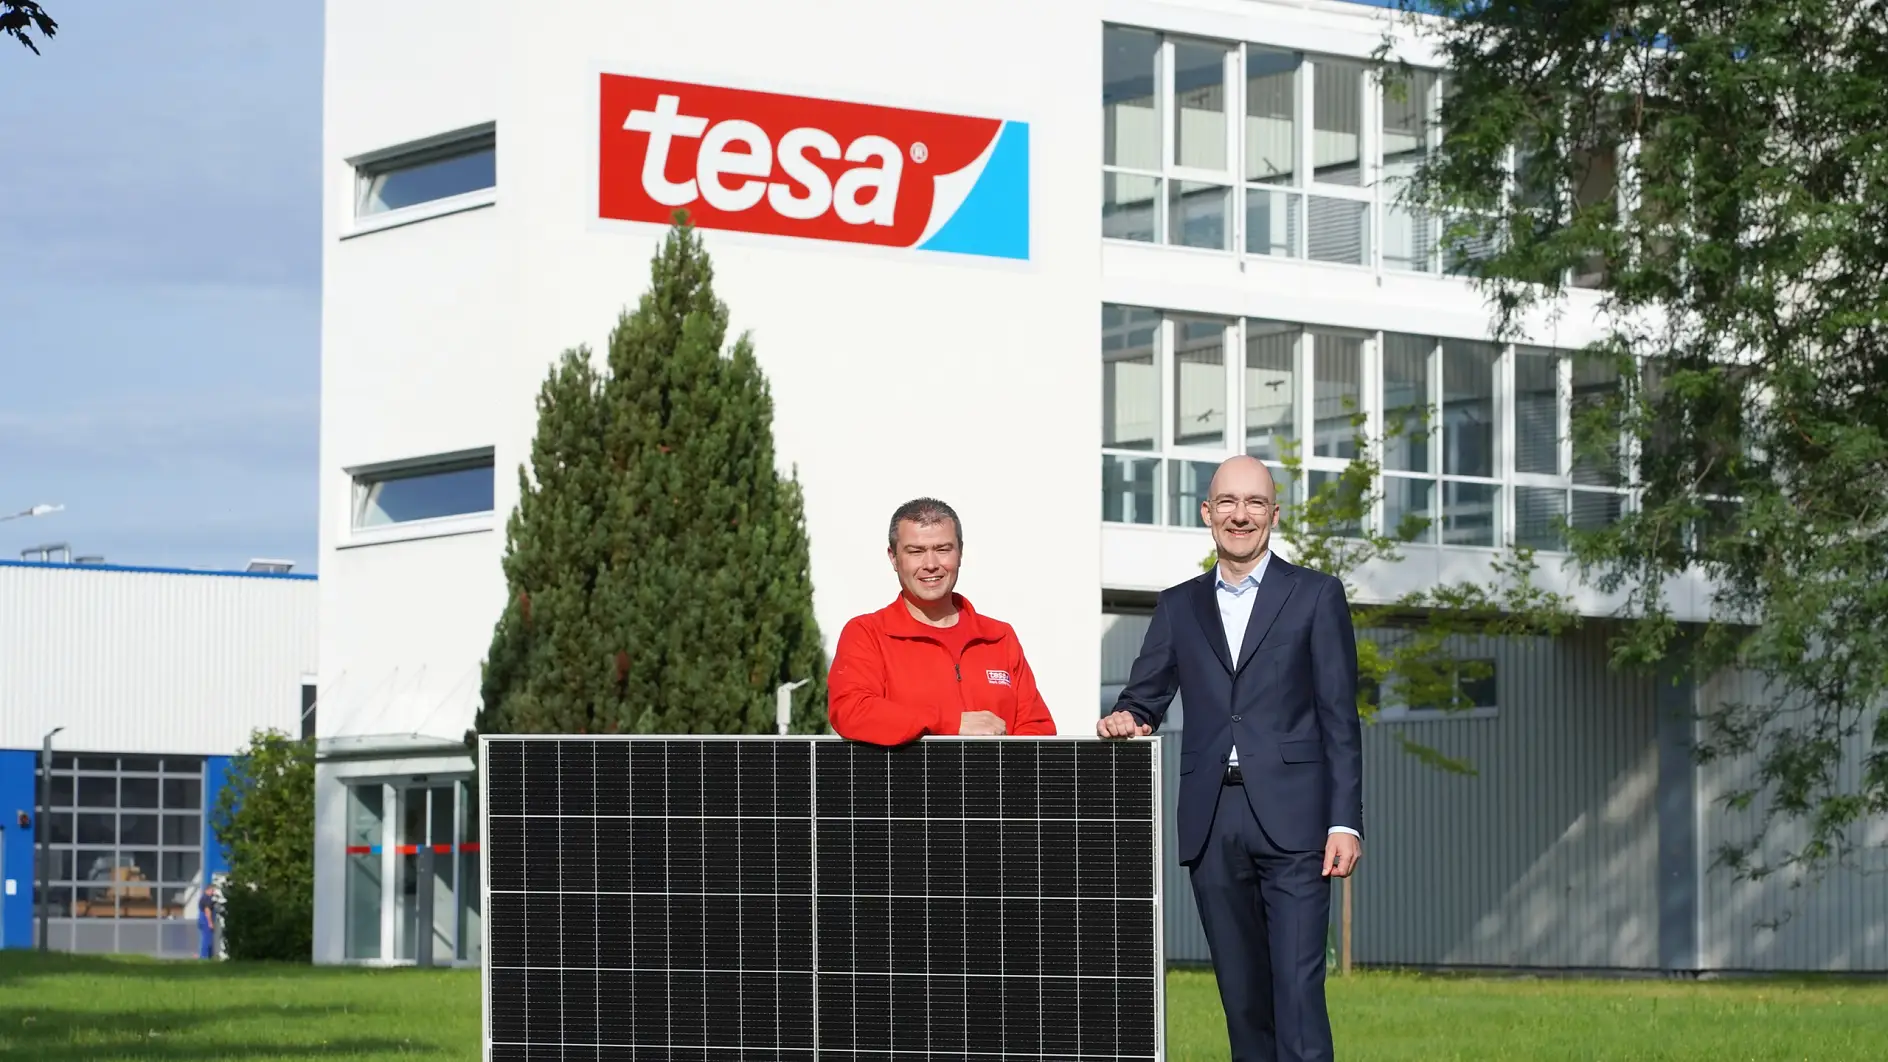 tesa setzt auf Nachhaltigkeit: Werksleiter Holger Rauth (rechts) und Tobias Wolter, Teamleiter Energie und Ausbildung (links), zeigen stolz eines der rund 13.000 Photovoltaikmodule, die das Werk zukünftig mit Solarenergie versorgen werden.